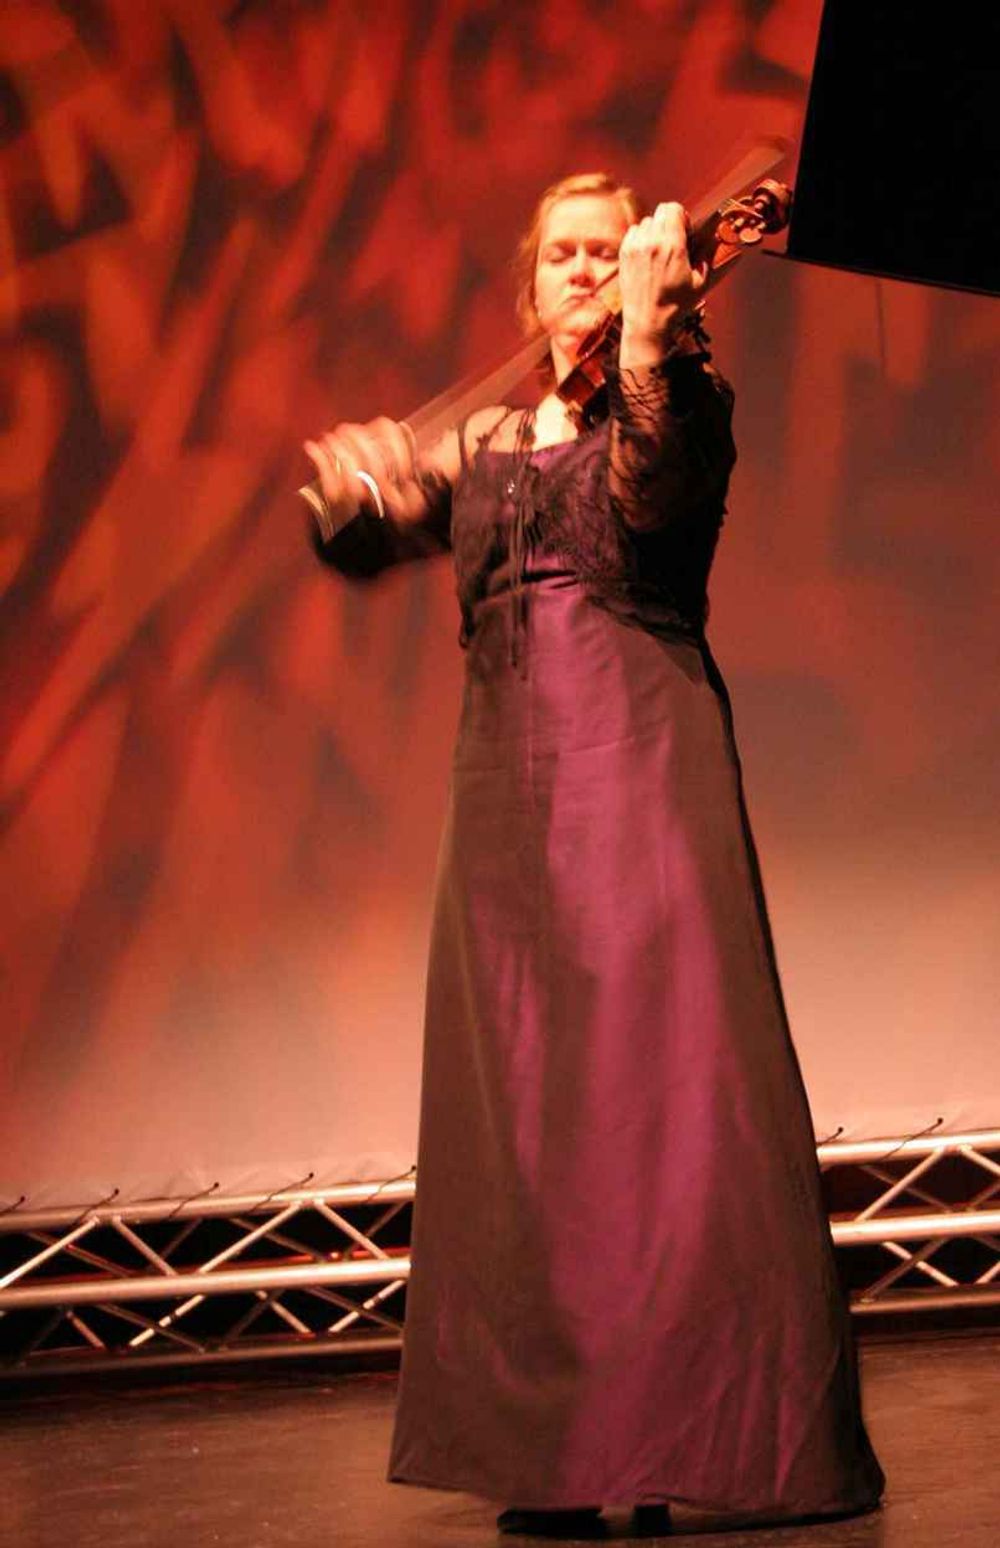 Den annerkjente Marianne Thorsen spilte nydelig på sin fiolin for publikum i Olavshallen under Technoport Awards.